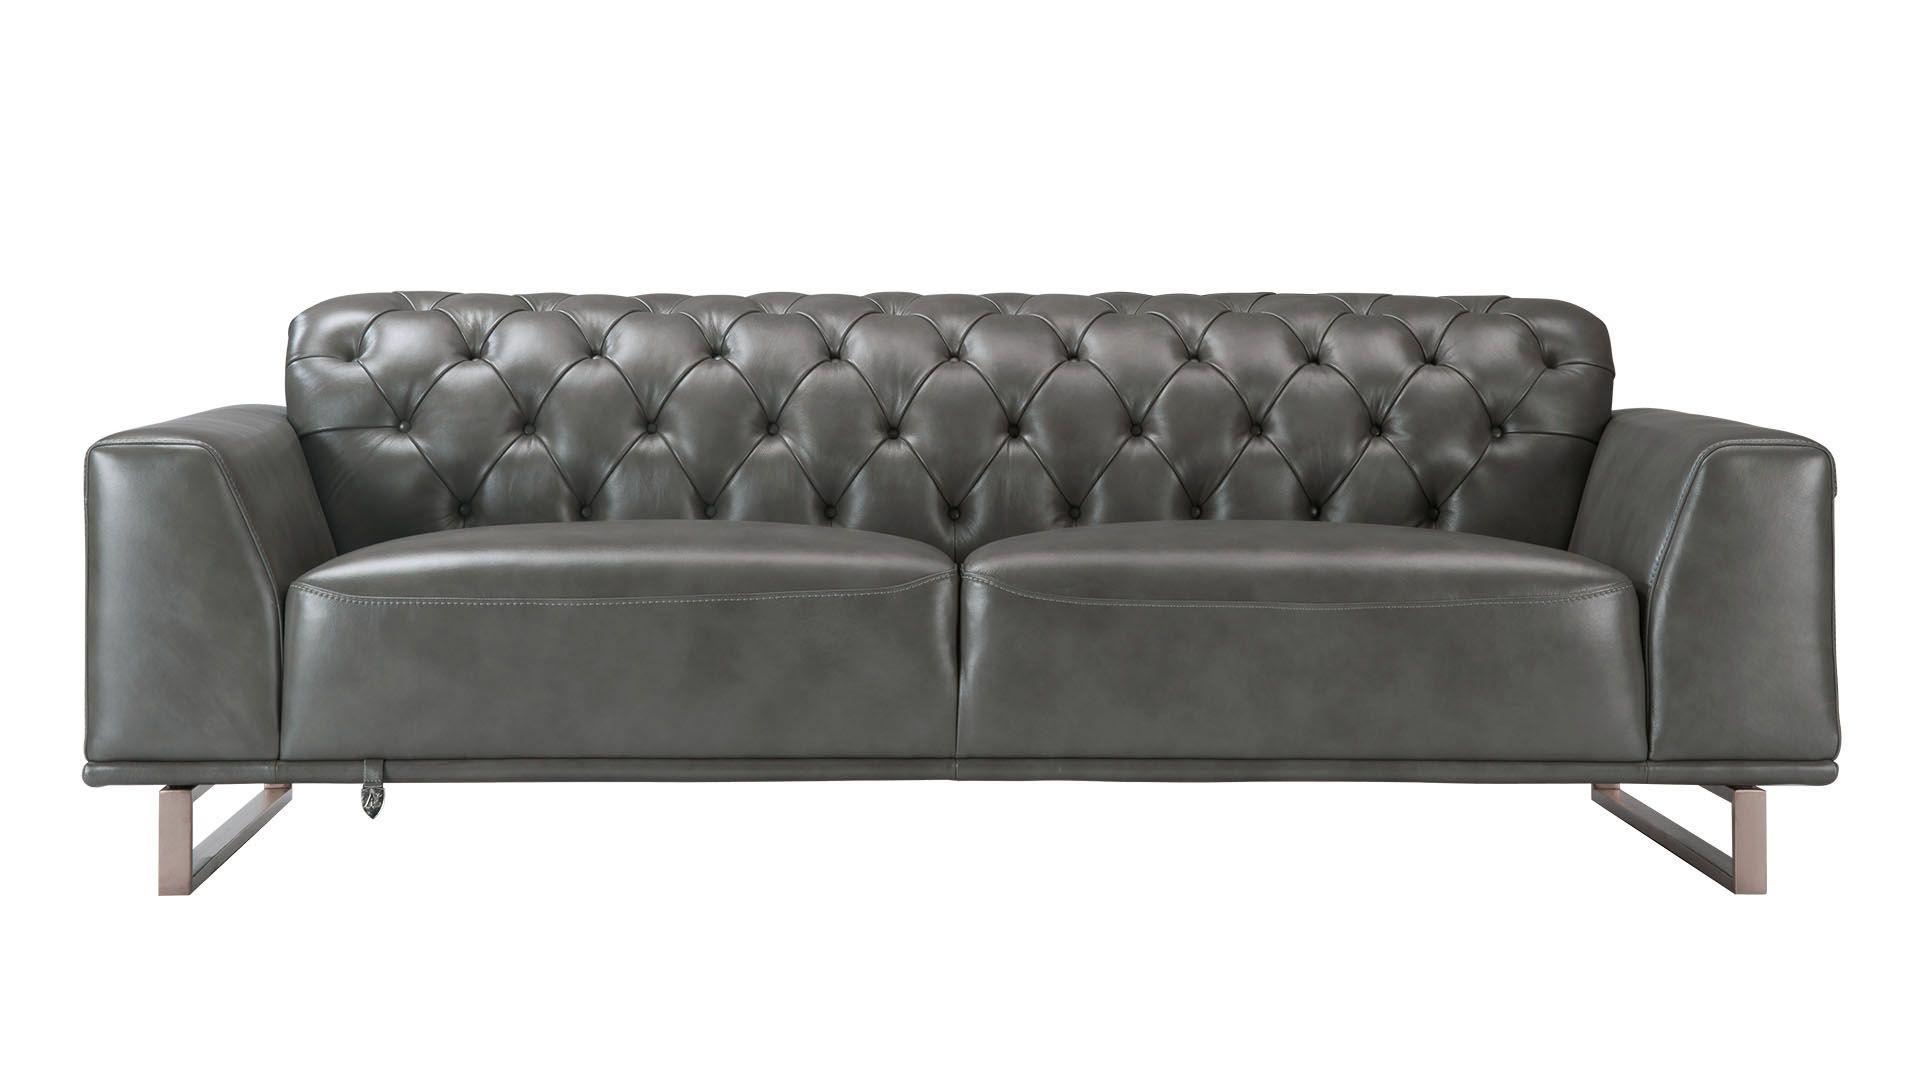 Contemporary, Modern Sofa EK693-GR EK693-GR-SF in Gray Italian Leather